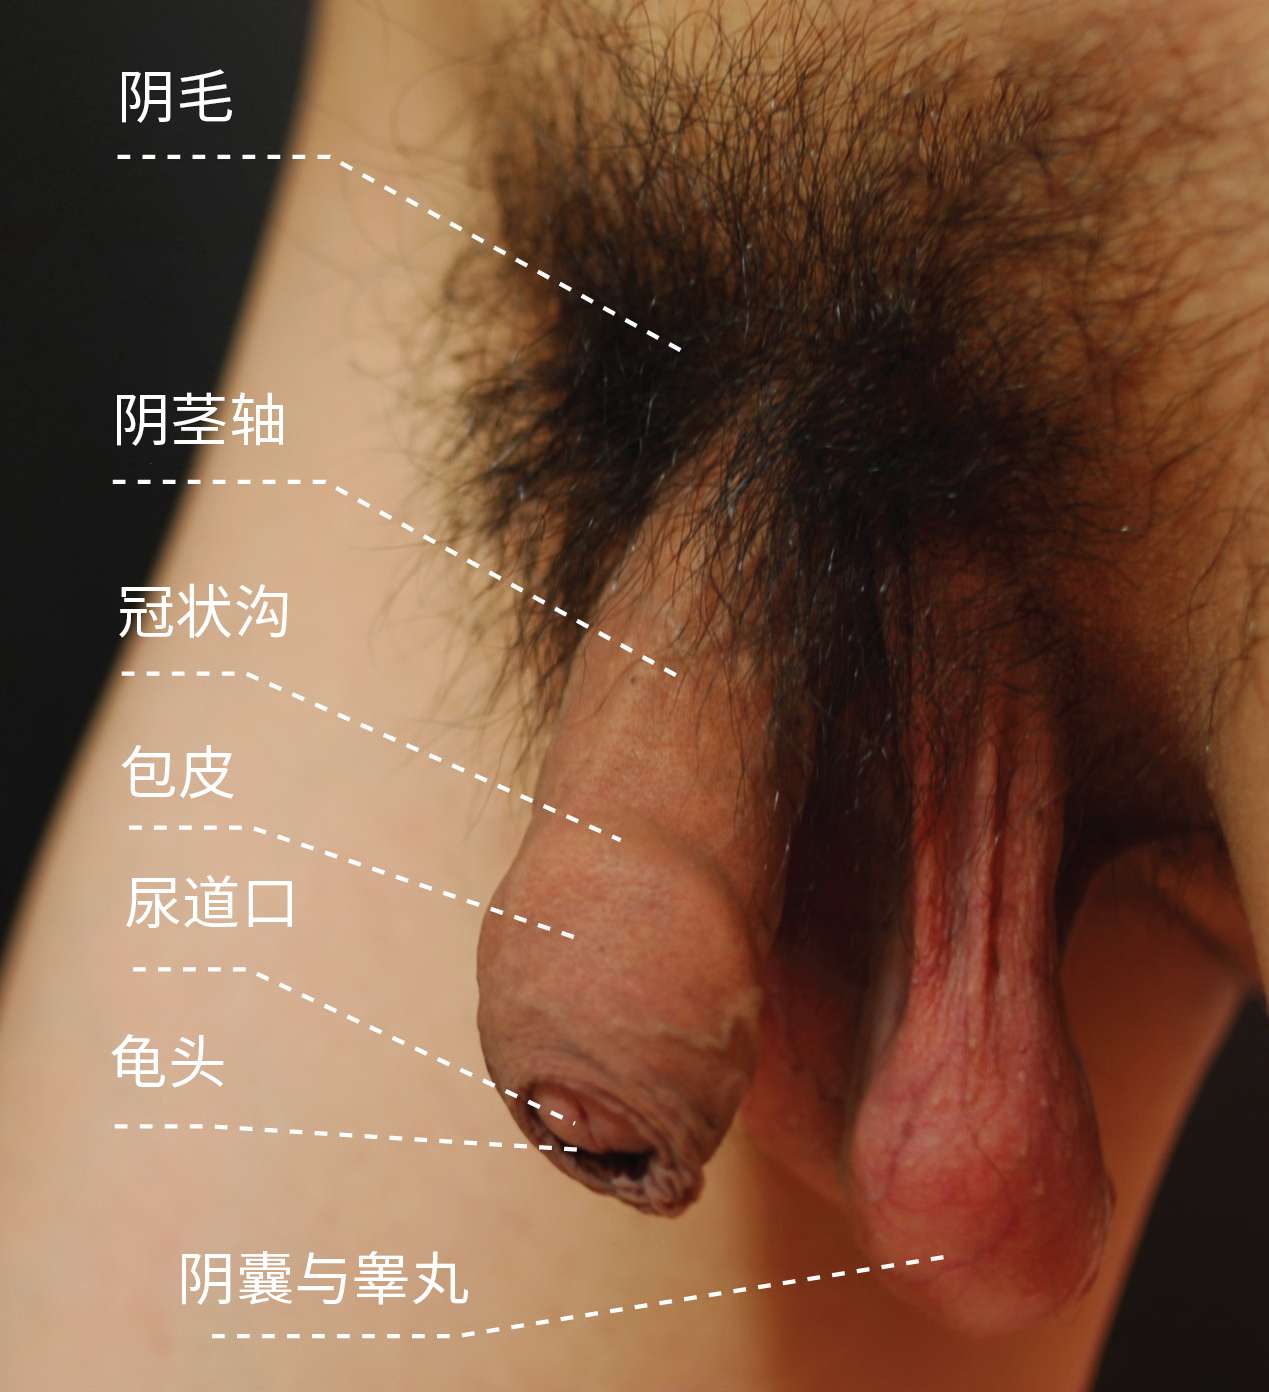 图 9， 亚洲男性外生殖器（疲软状态，包皮覆盖）